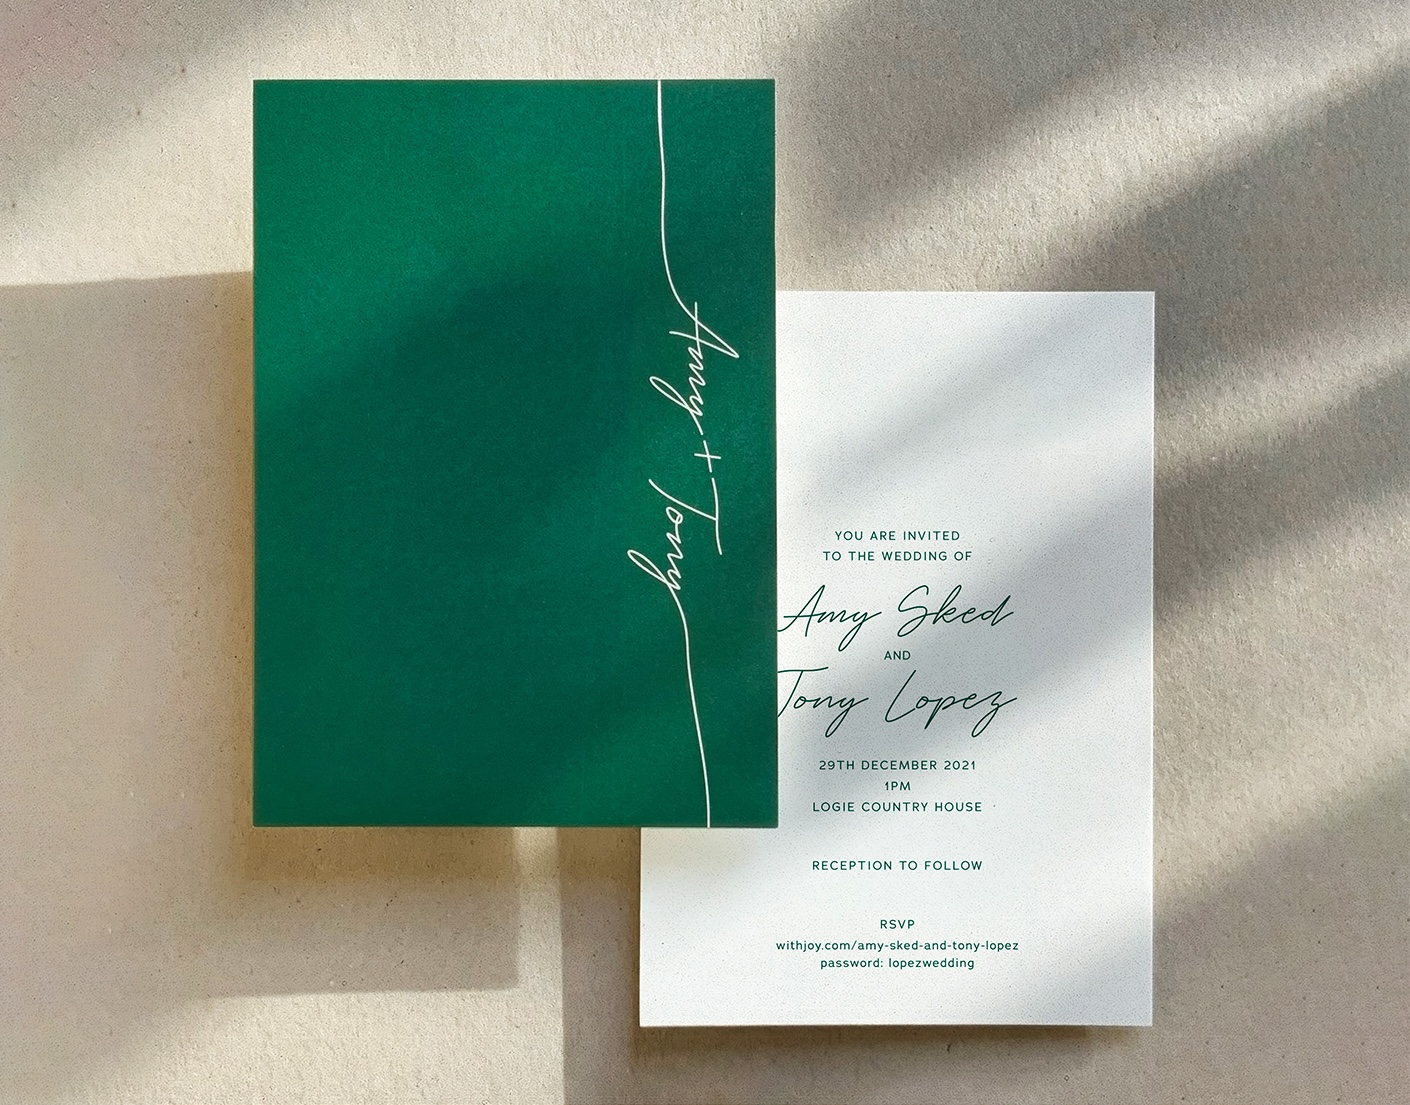 Amy & Tony wedding invitations